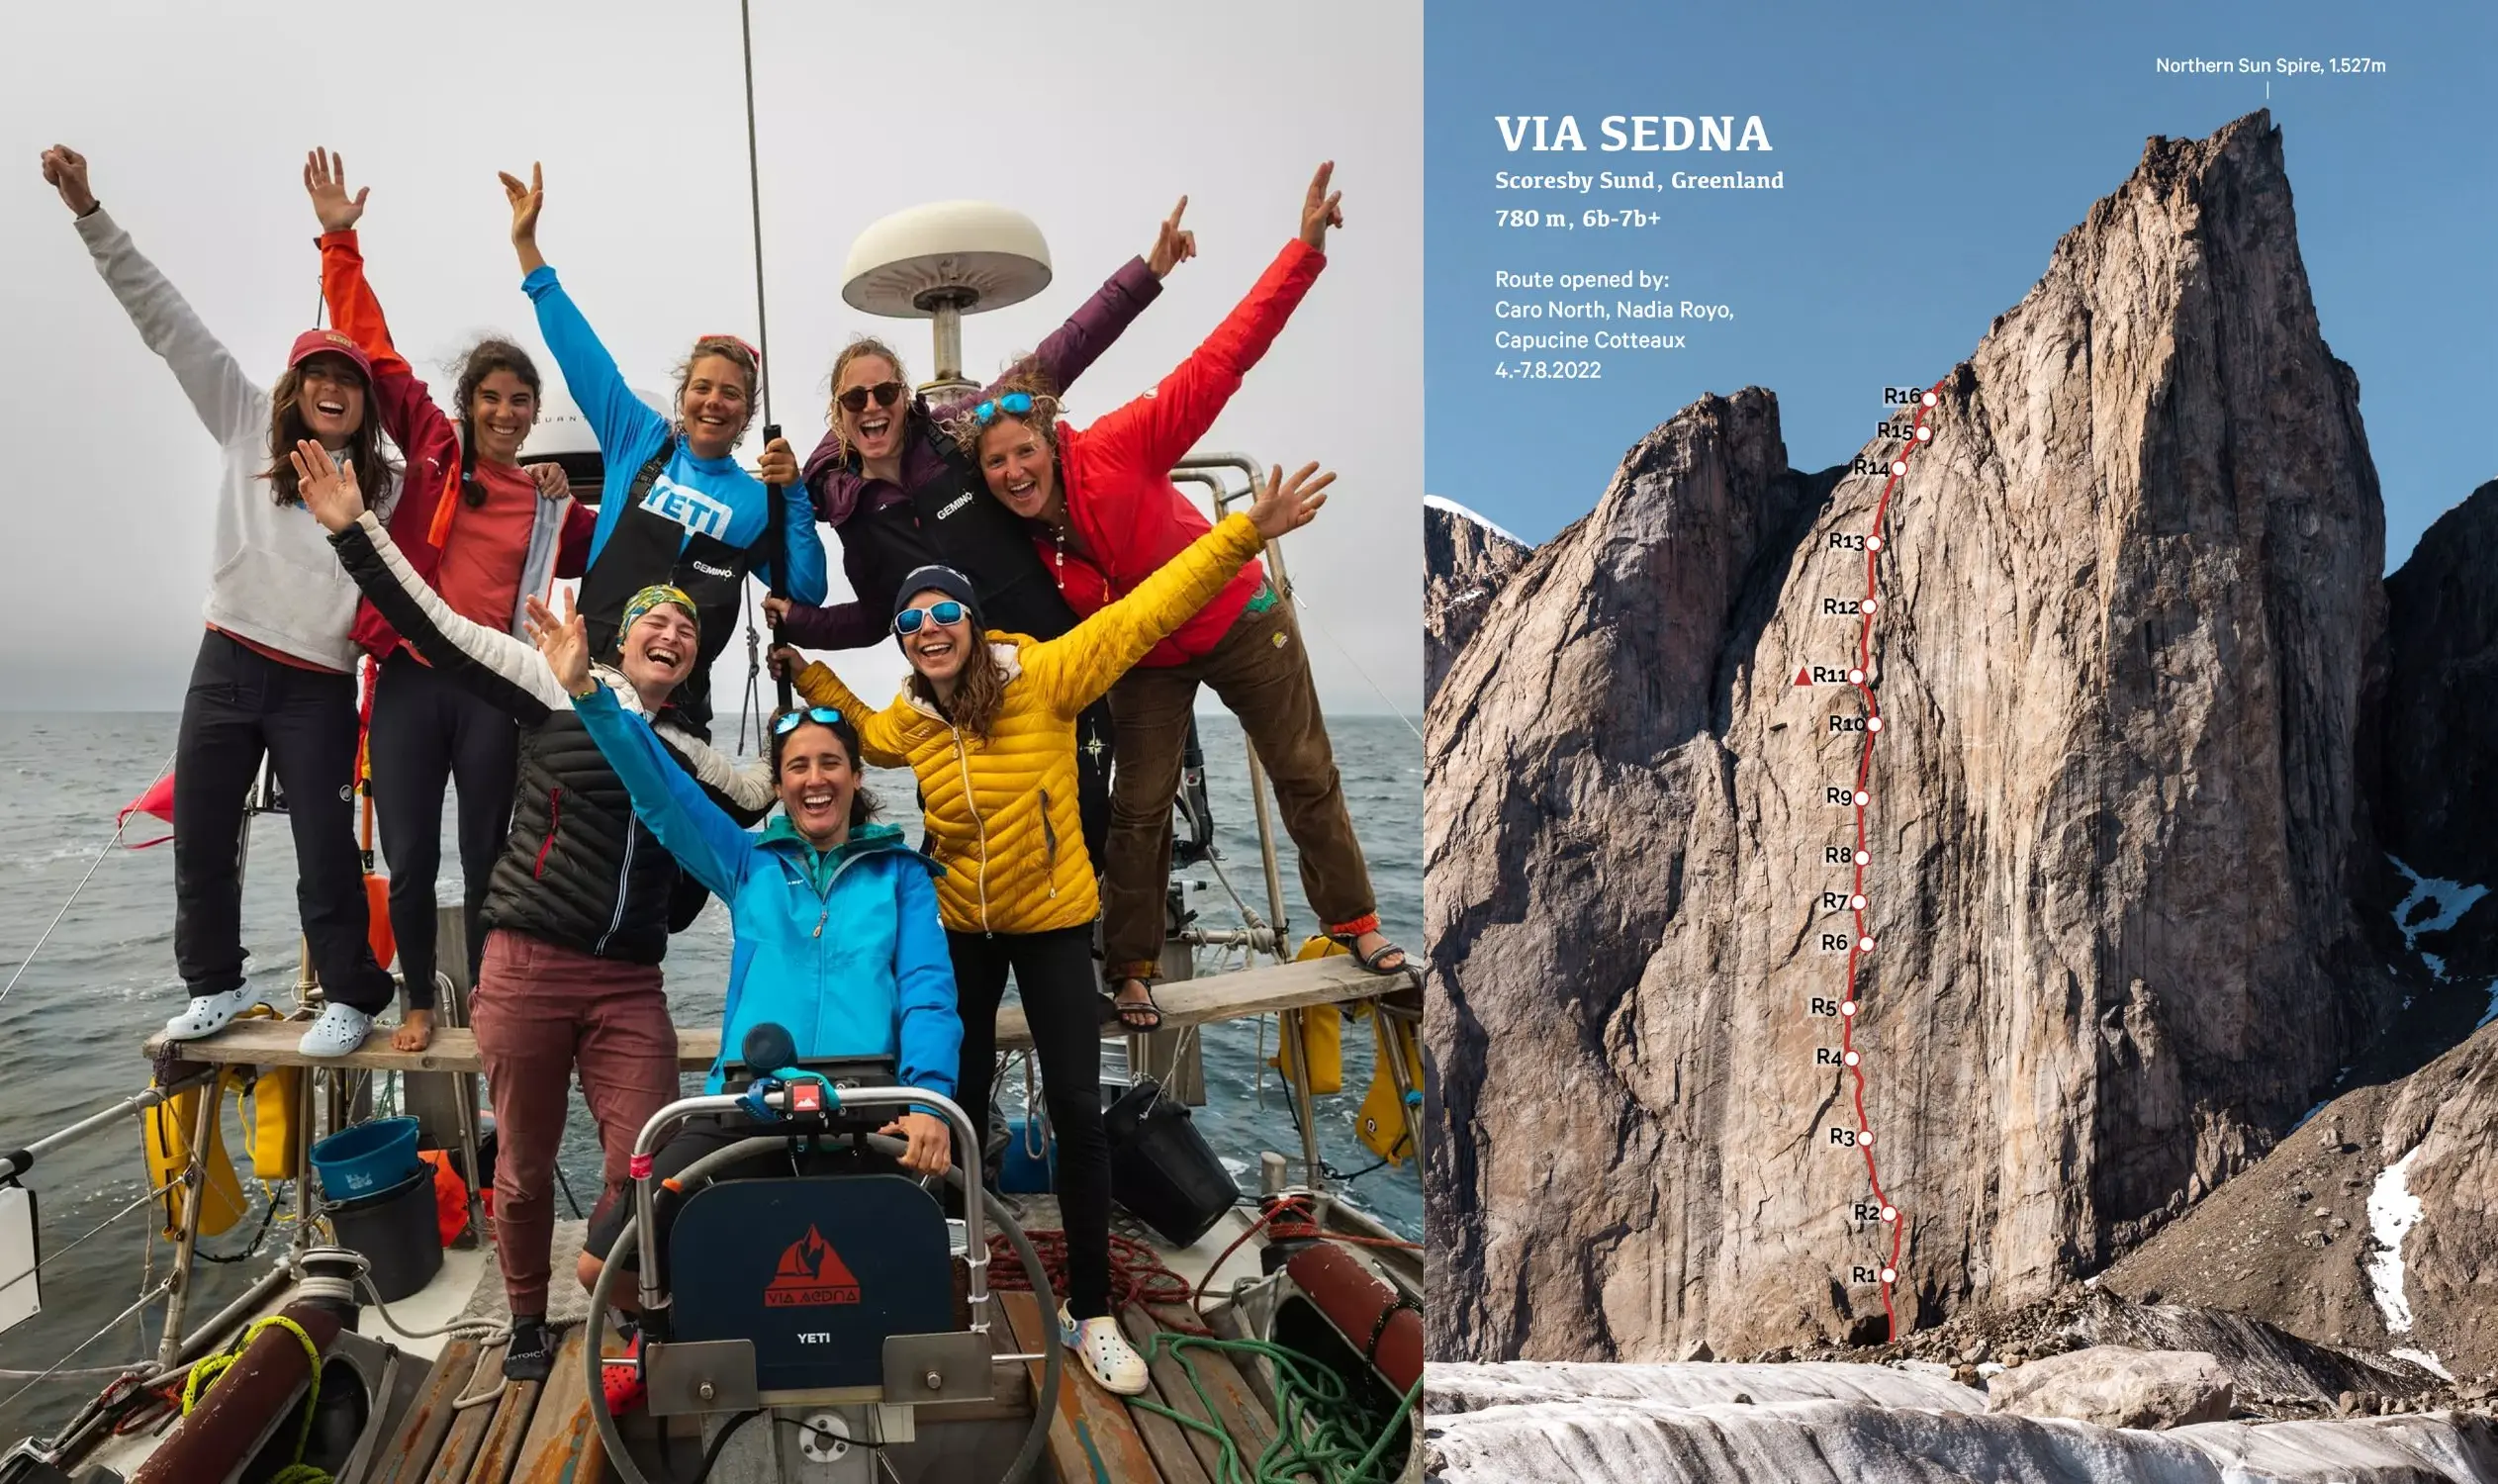 міжнародна жіноча команда. новий маршрут "Via Sedna" довжиною 750 метрів та трудностями 7b+, що був прокладений на східній стороні гори Northern Sun Spire у Гренландії